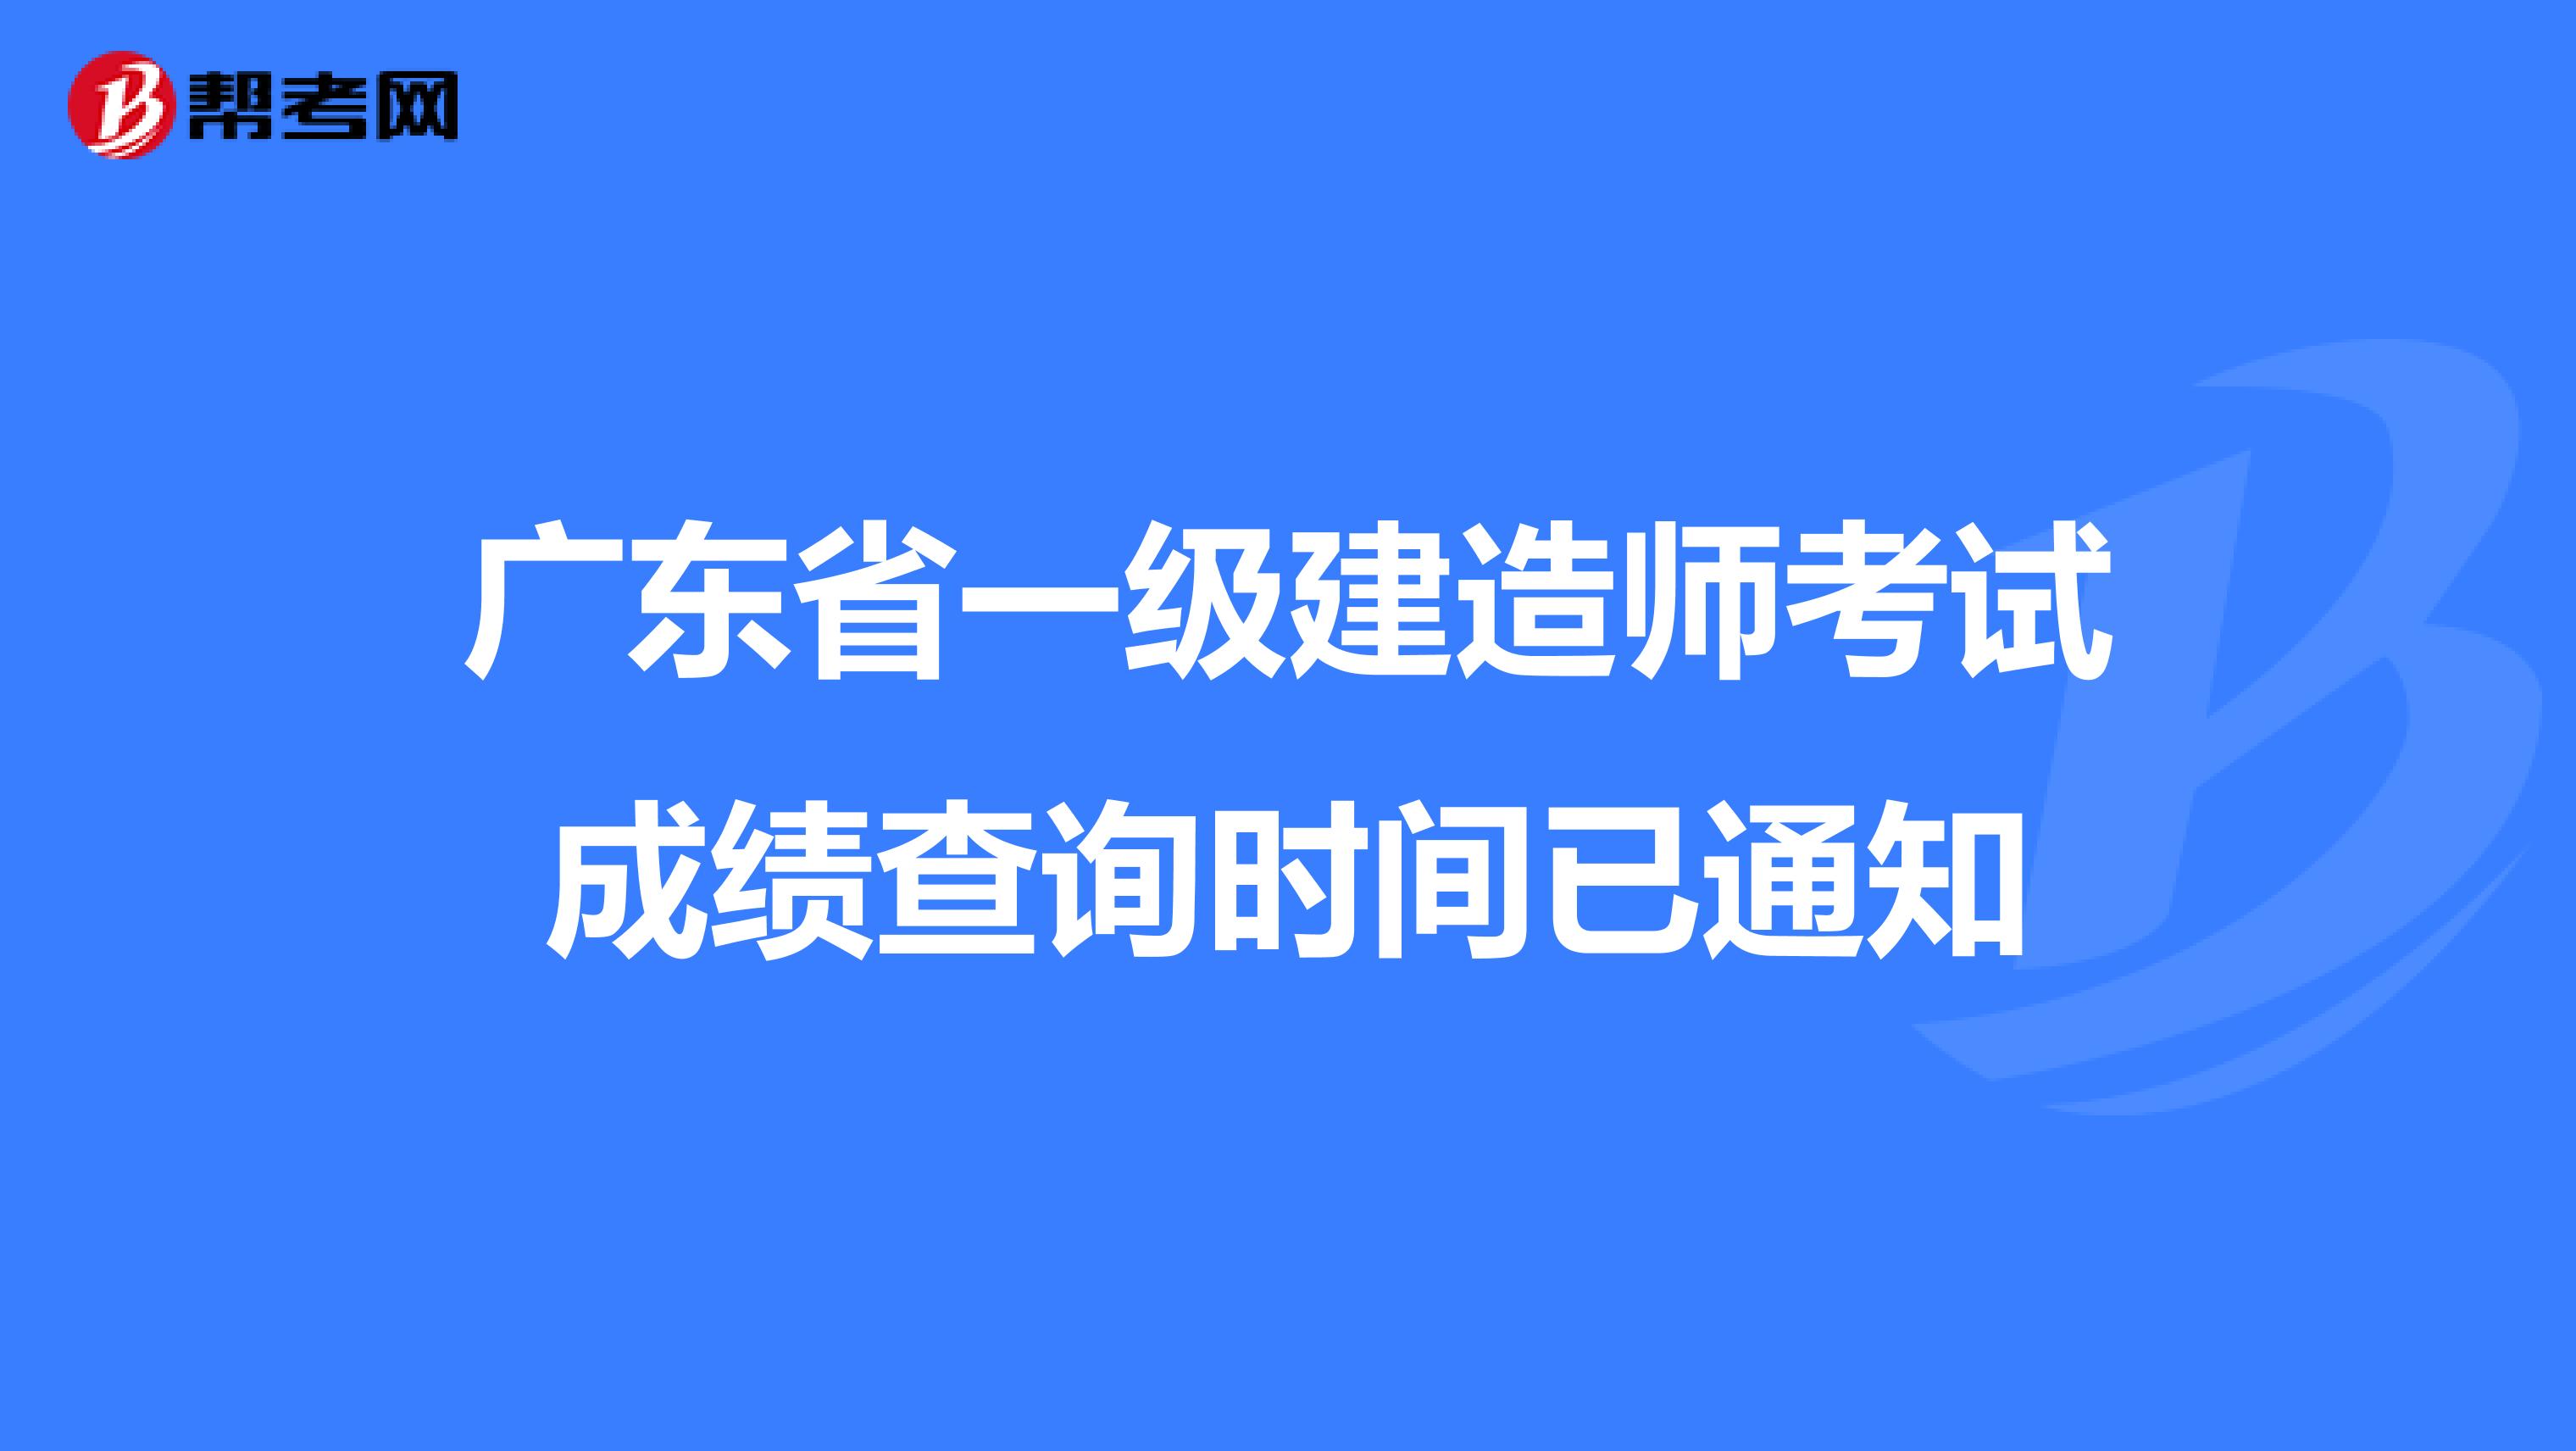 广东省一级建造师考试成绩查询时间已通知